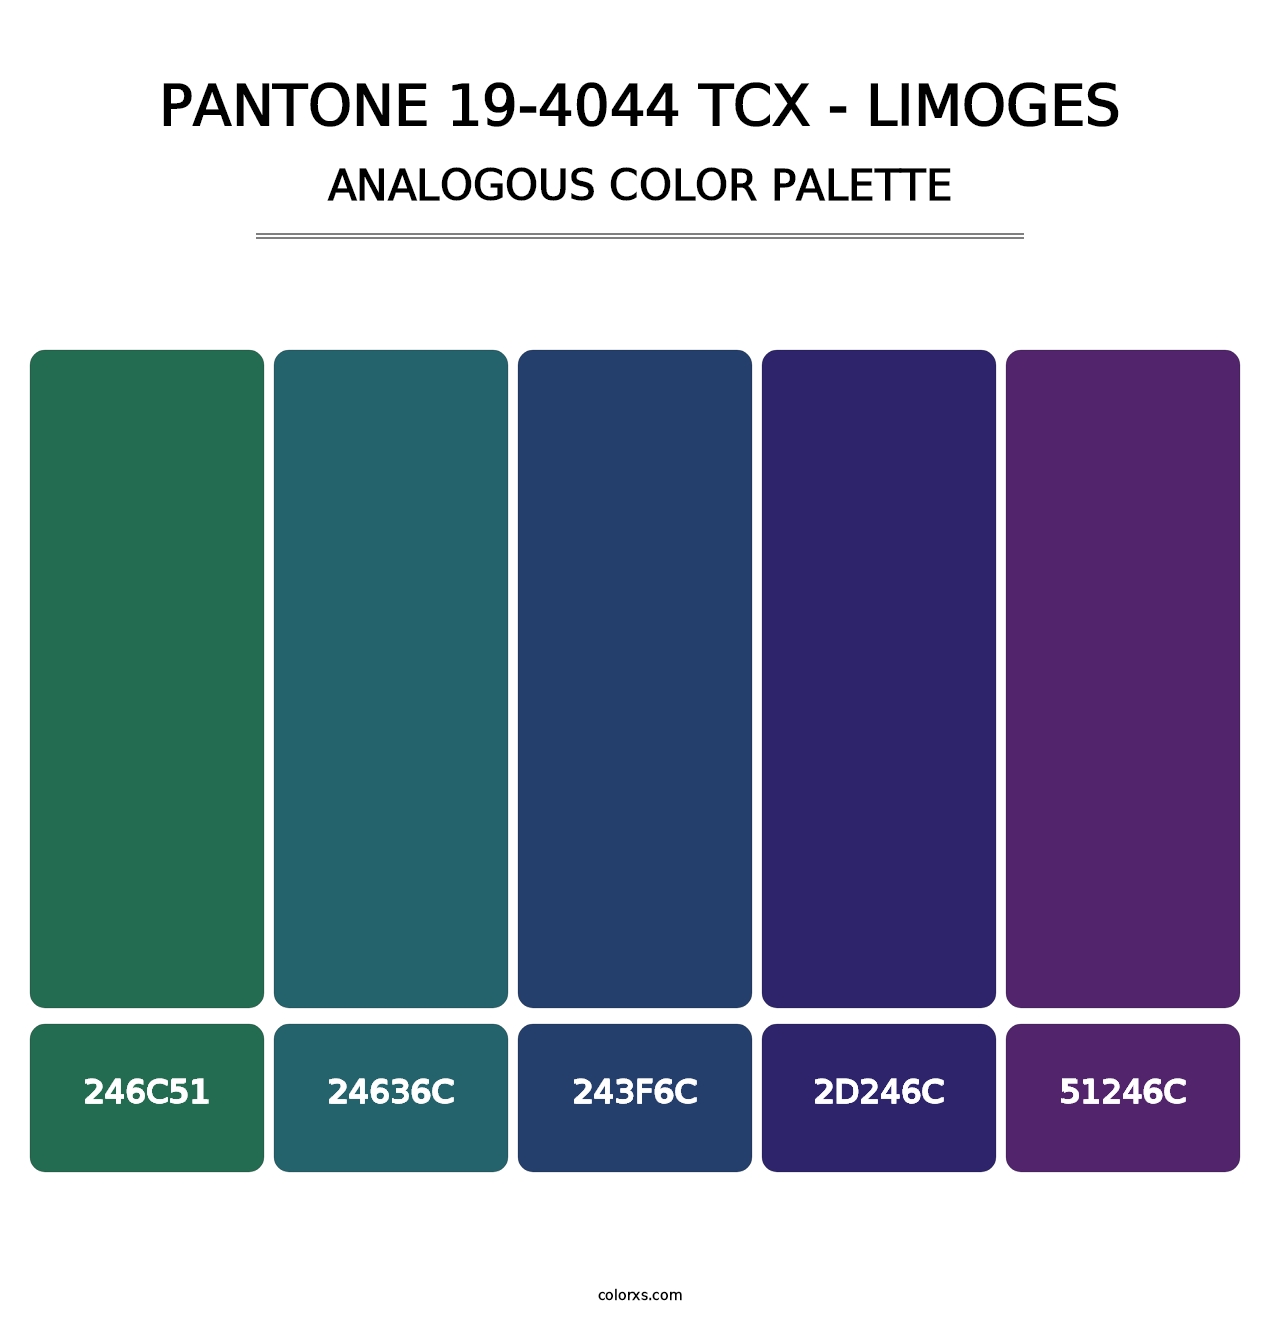 PANTONE 19-4044 TCX - Limoges - Analogous Color Palette